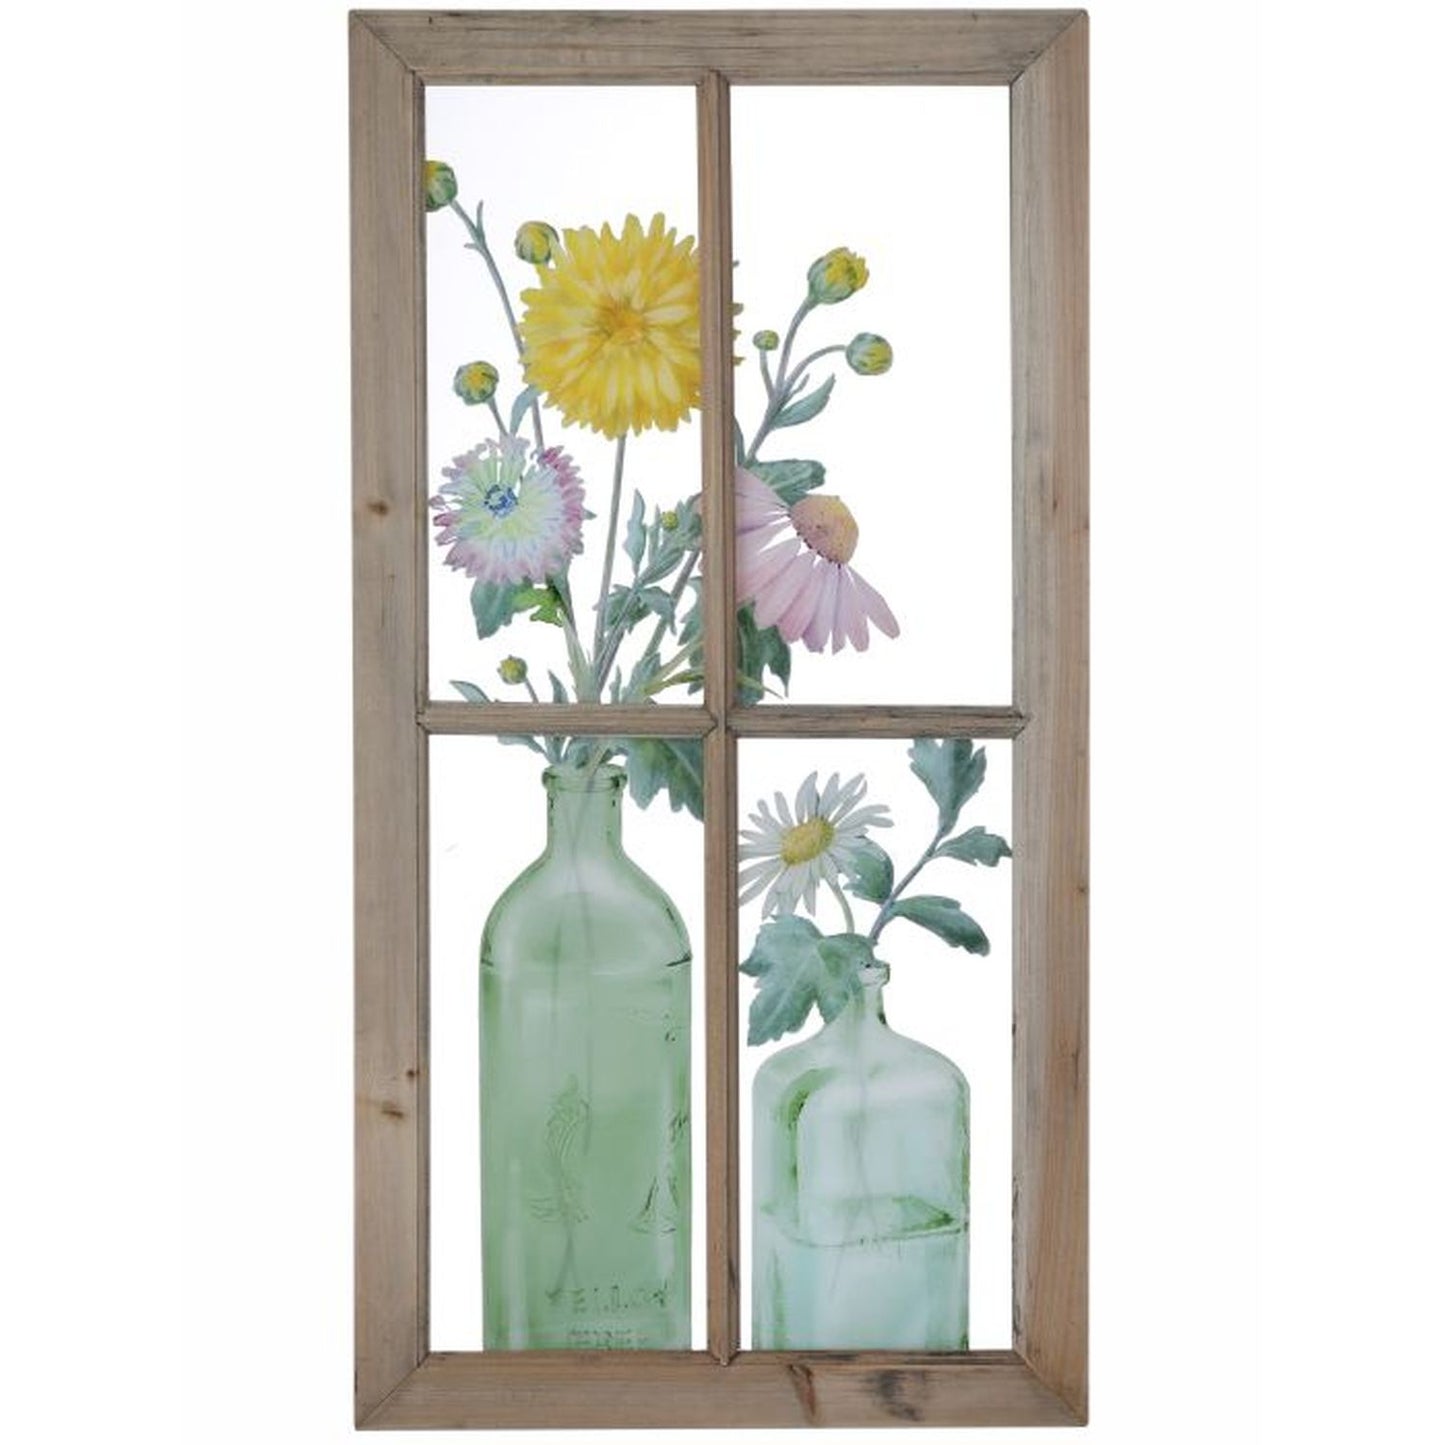 Regency International Window Acrylic Flower in Bottles Frame15.25" x 31"T